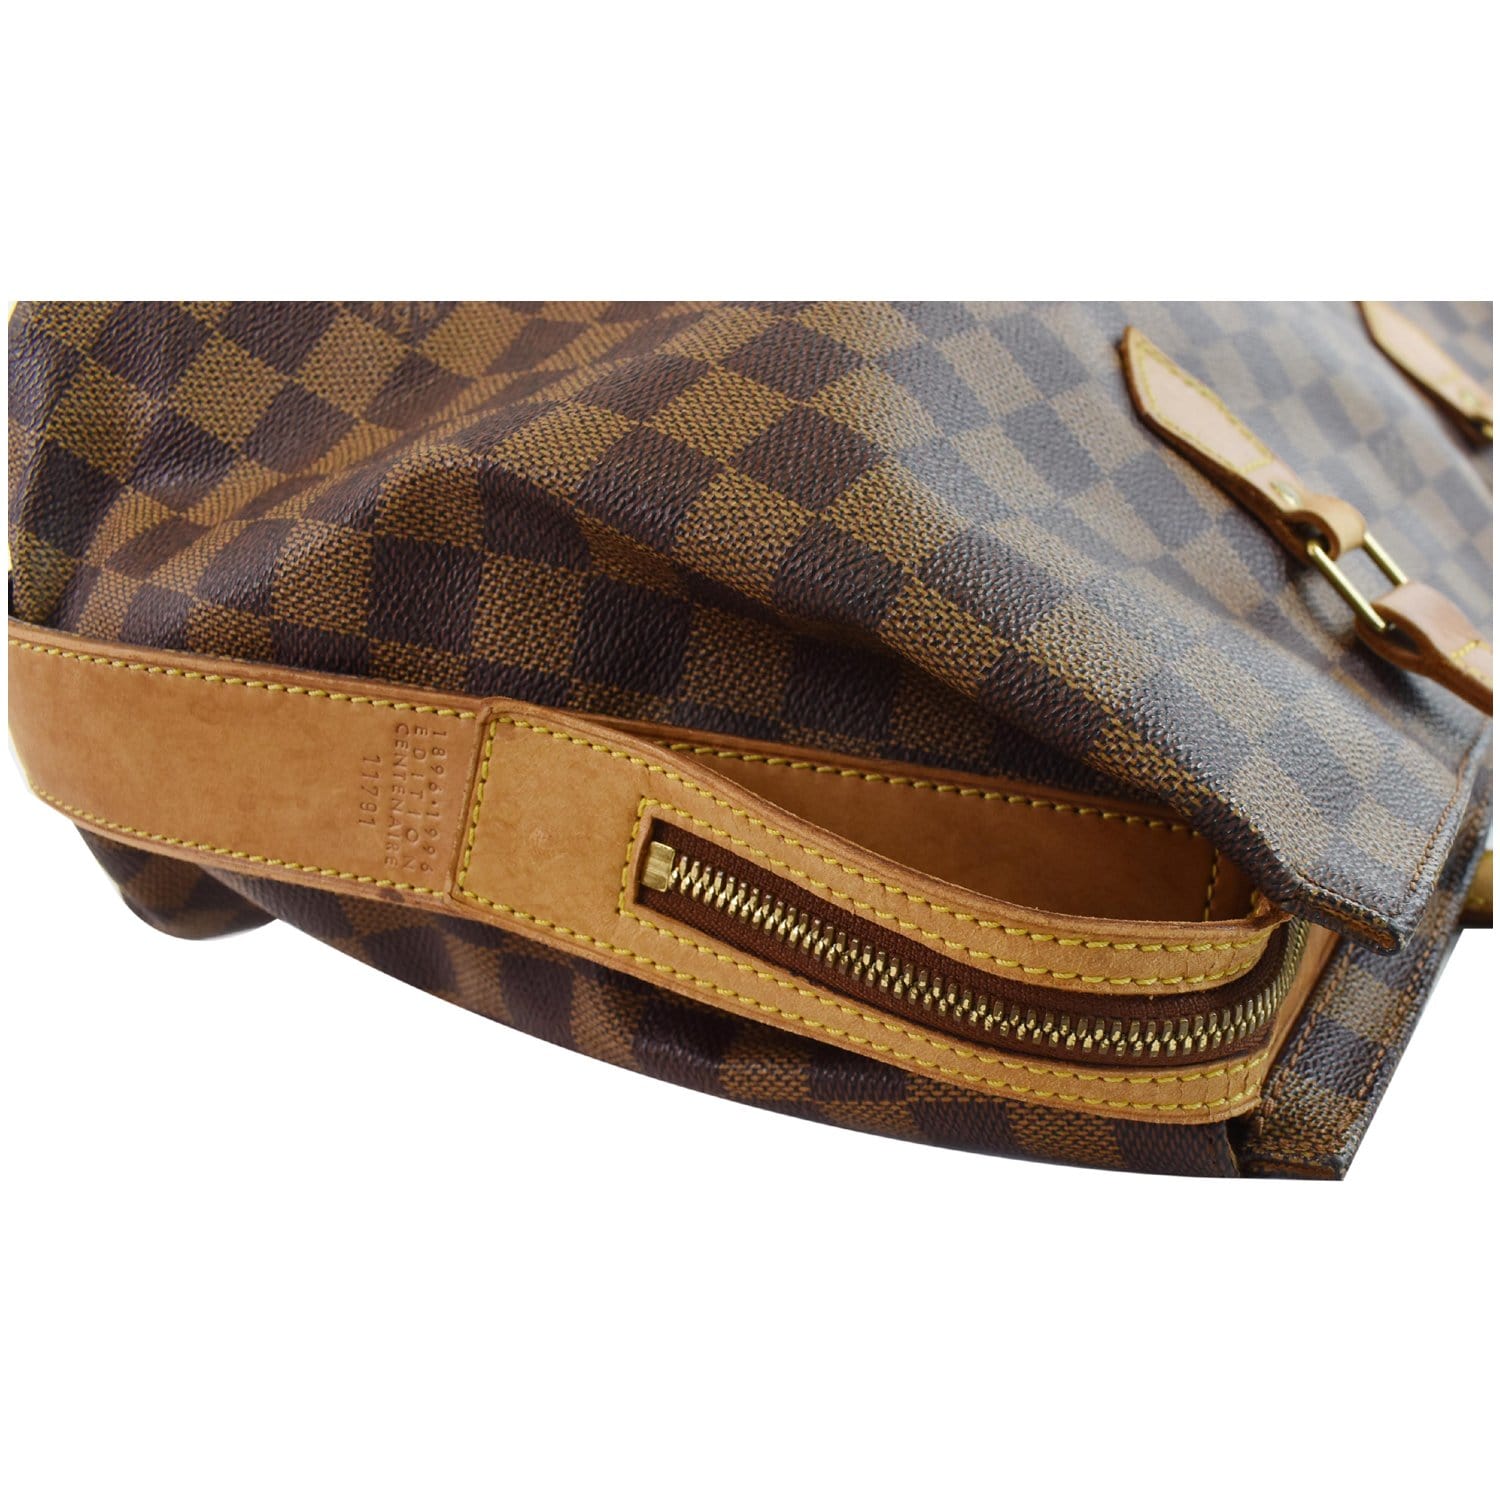 Pre-Owned Louis Vuitton Chelsea Damier Ebene Shoulder Bag - Excellent  Condition 